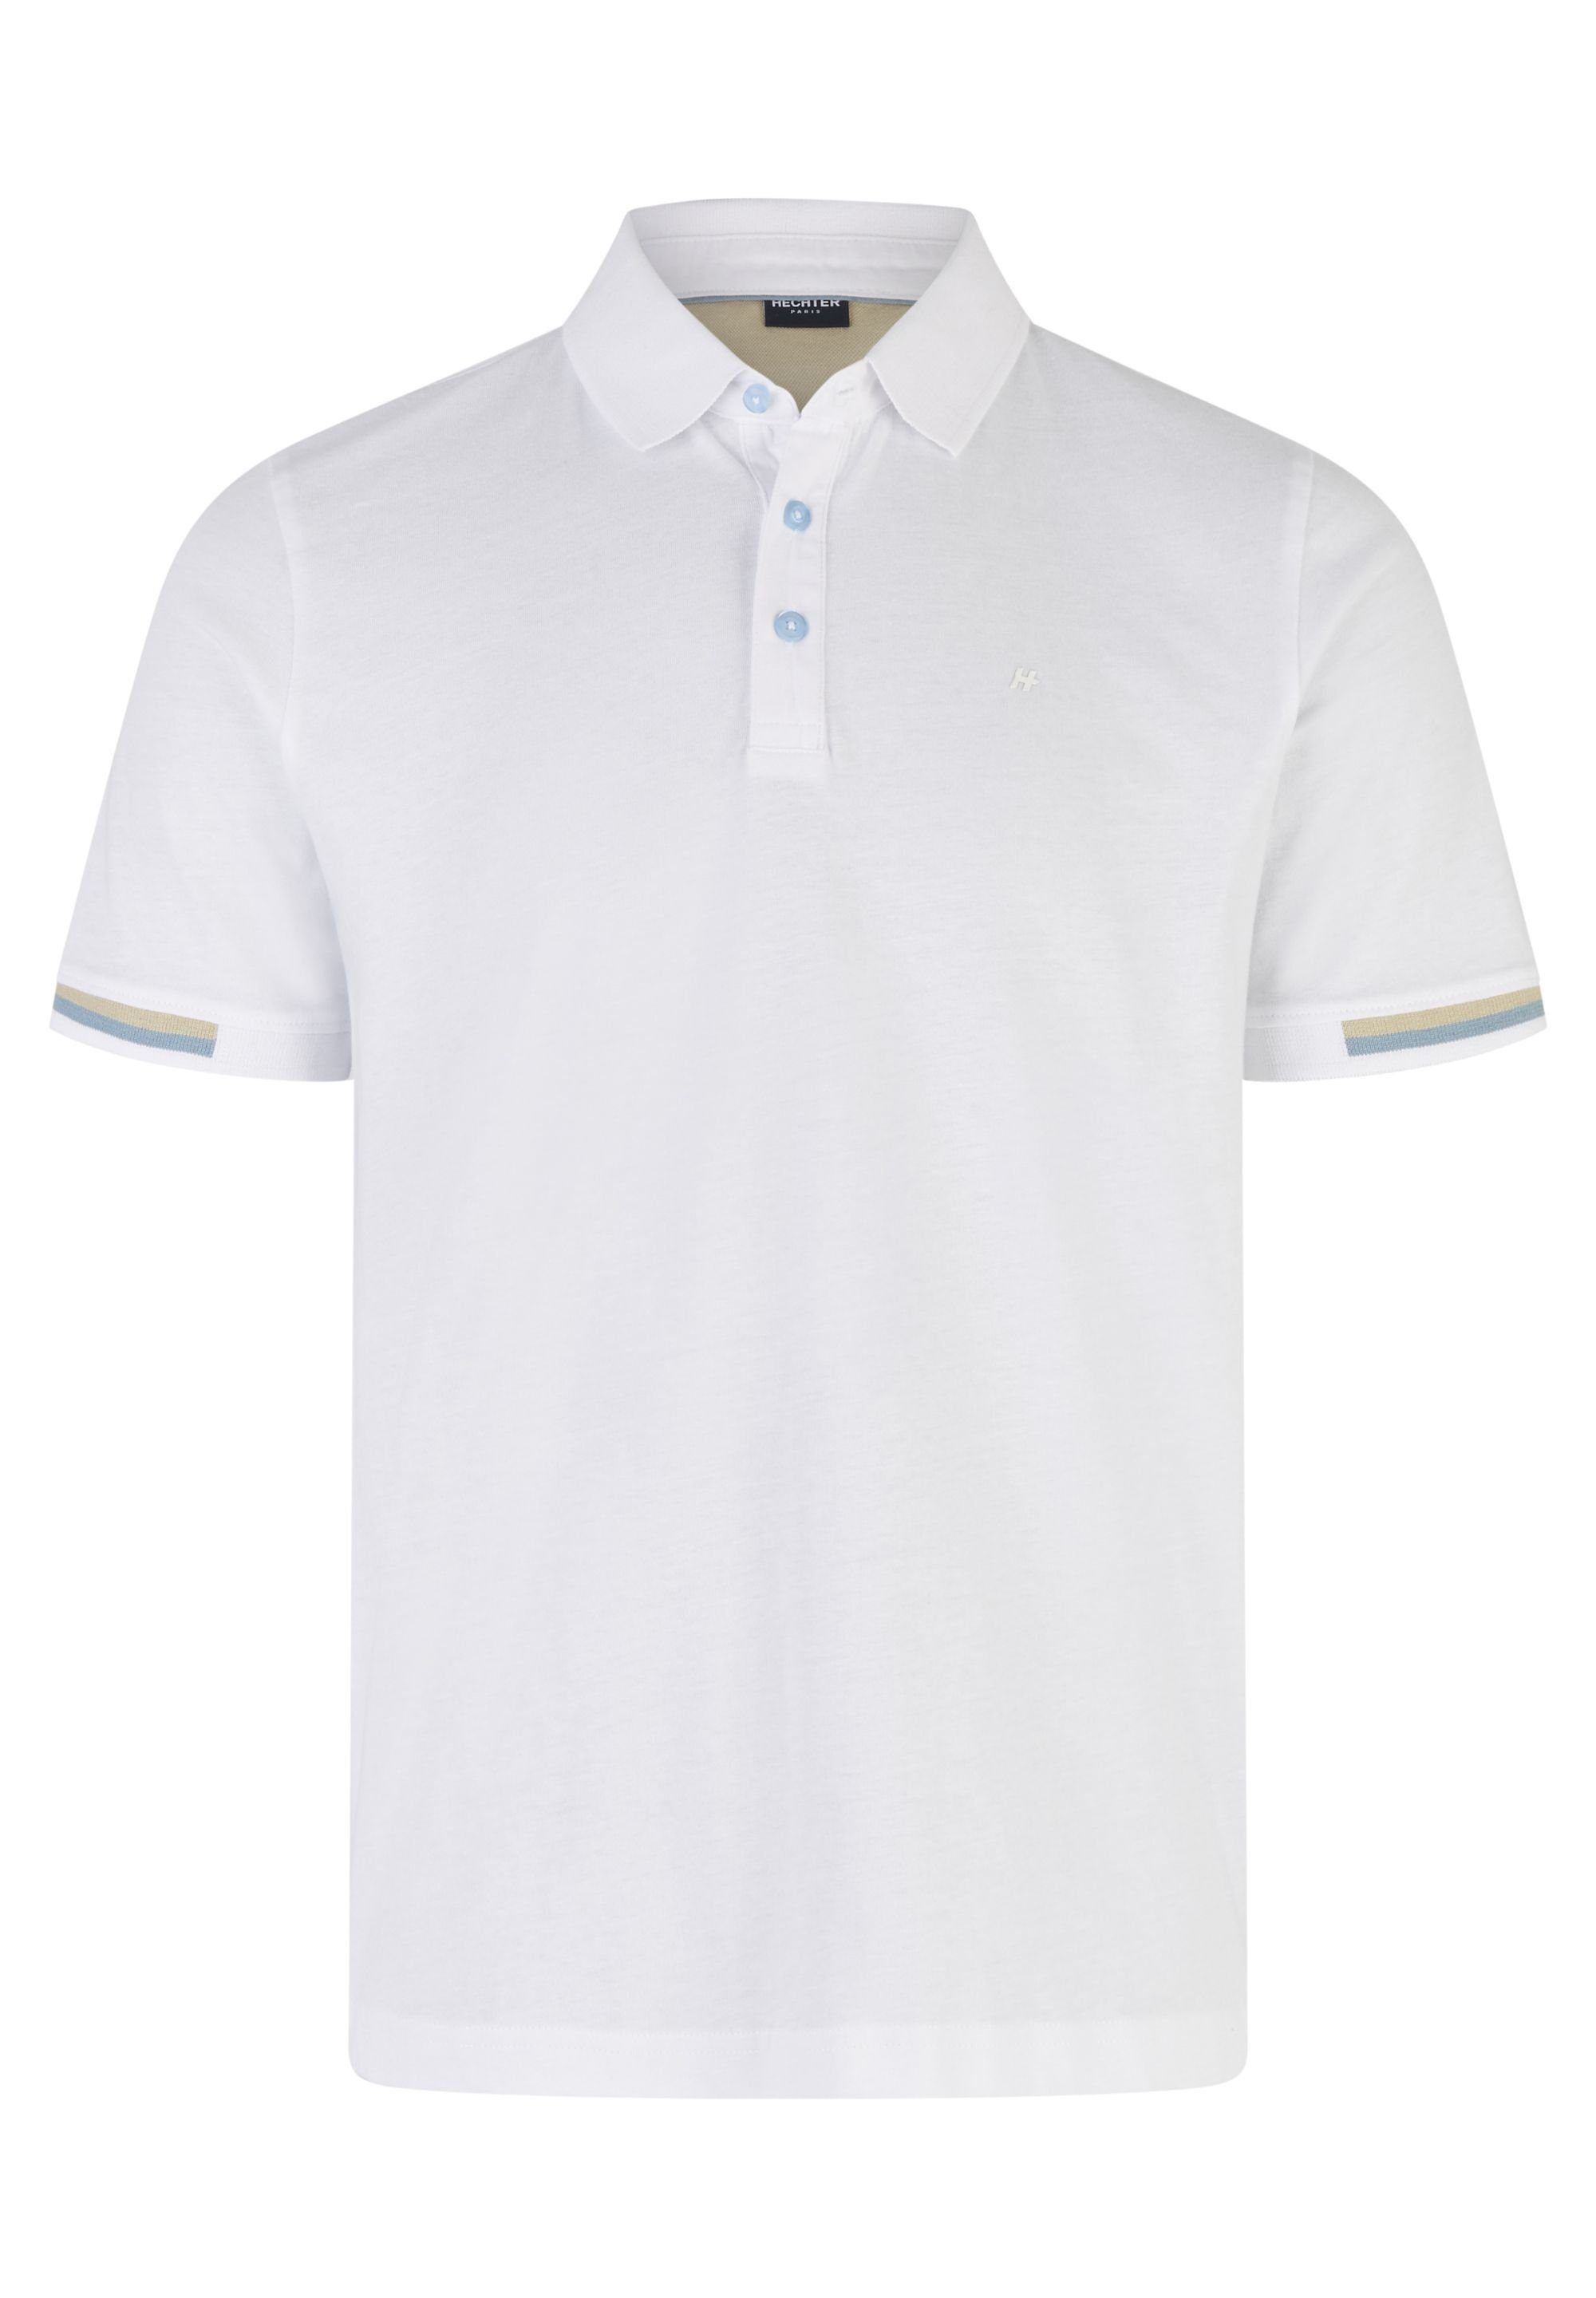 HECHTER PARIS Poloshirt mit polokrage white | Poloshirts